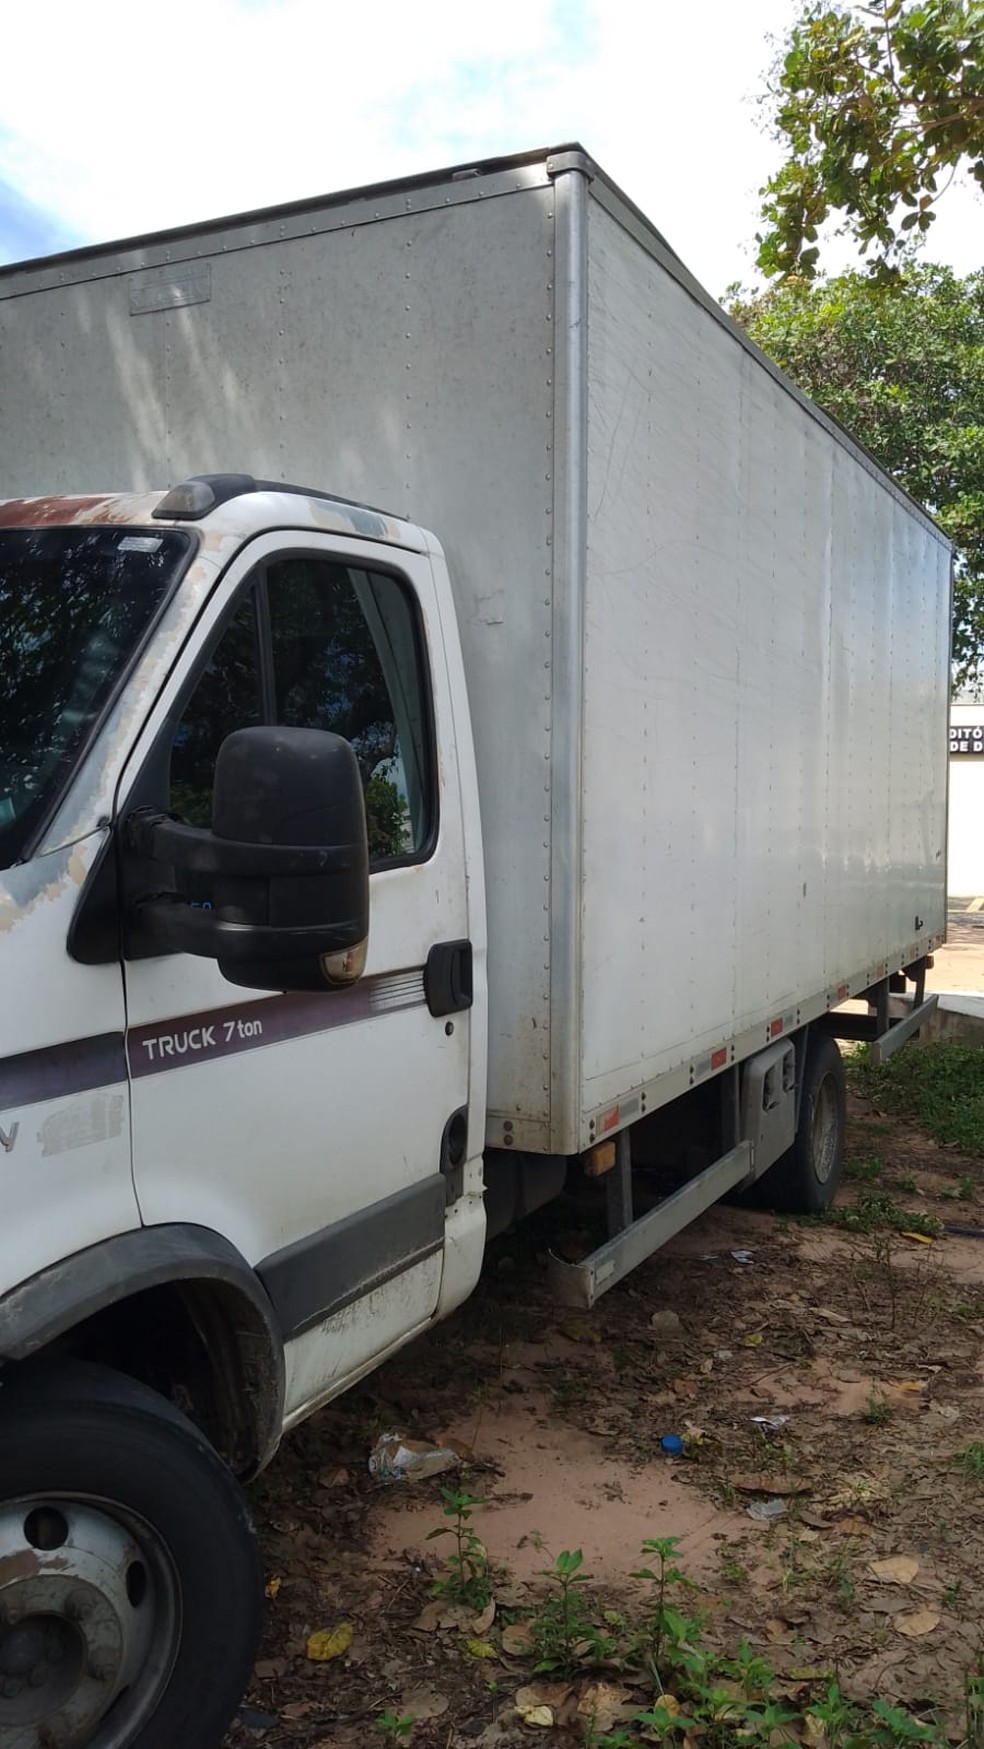 Viaturas com auditores fiscais são bloqueadas durante escolta e motorista  de caminhão foge com carga apreendida na Grande Natal | Rio Grande do Norte  | G1